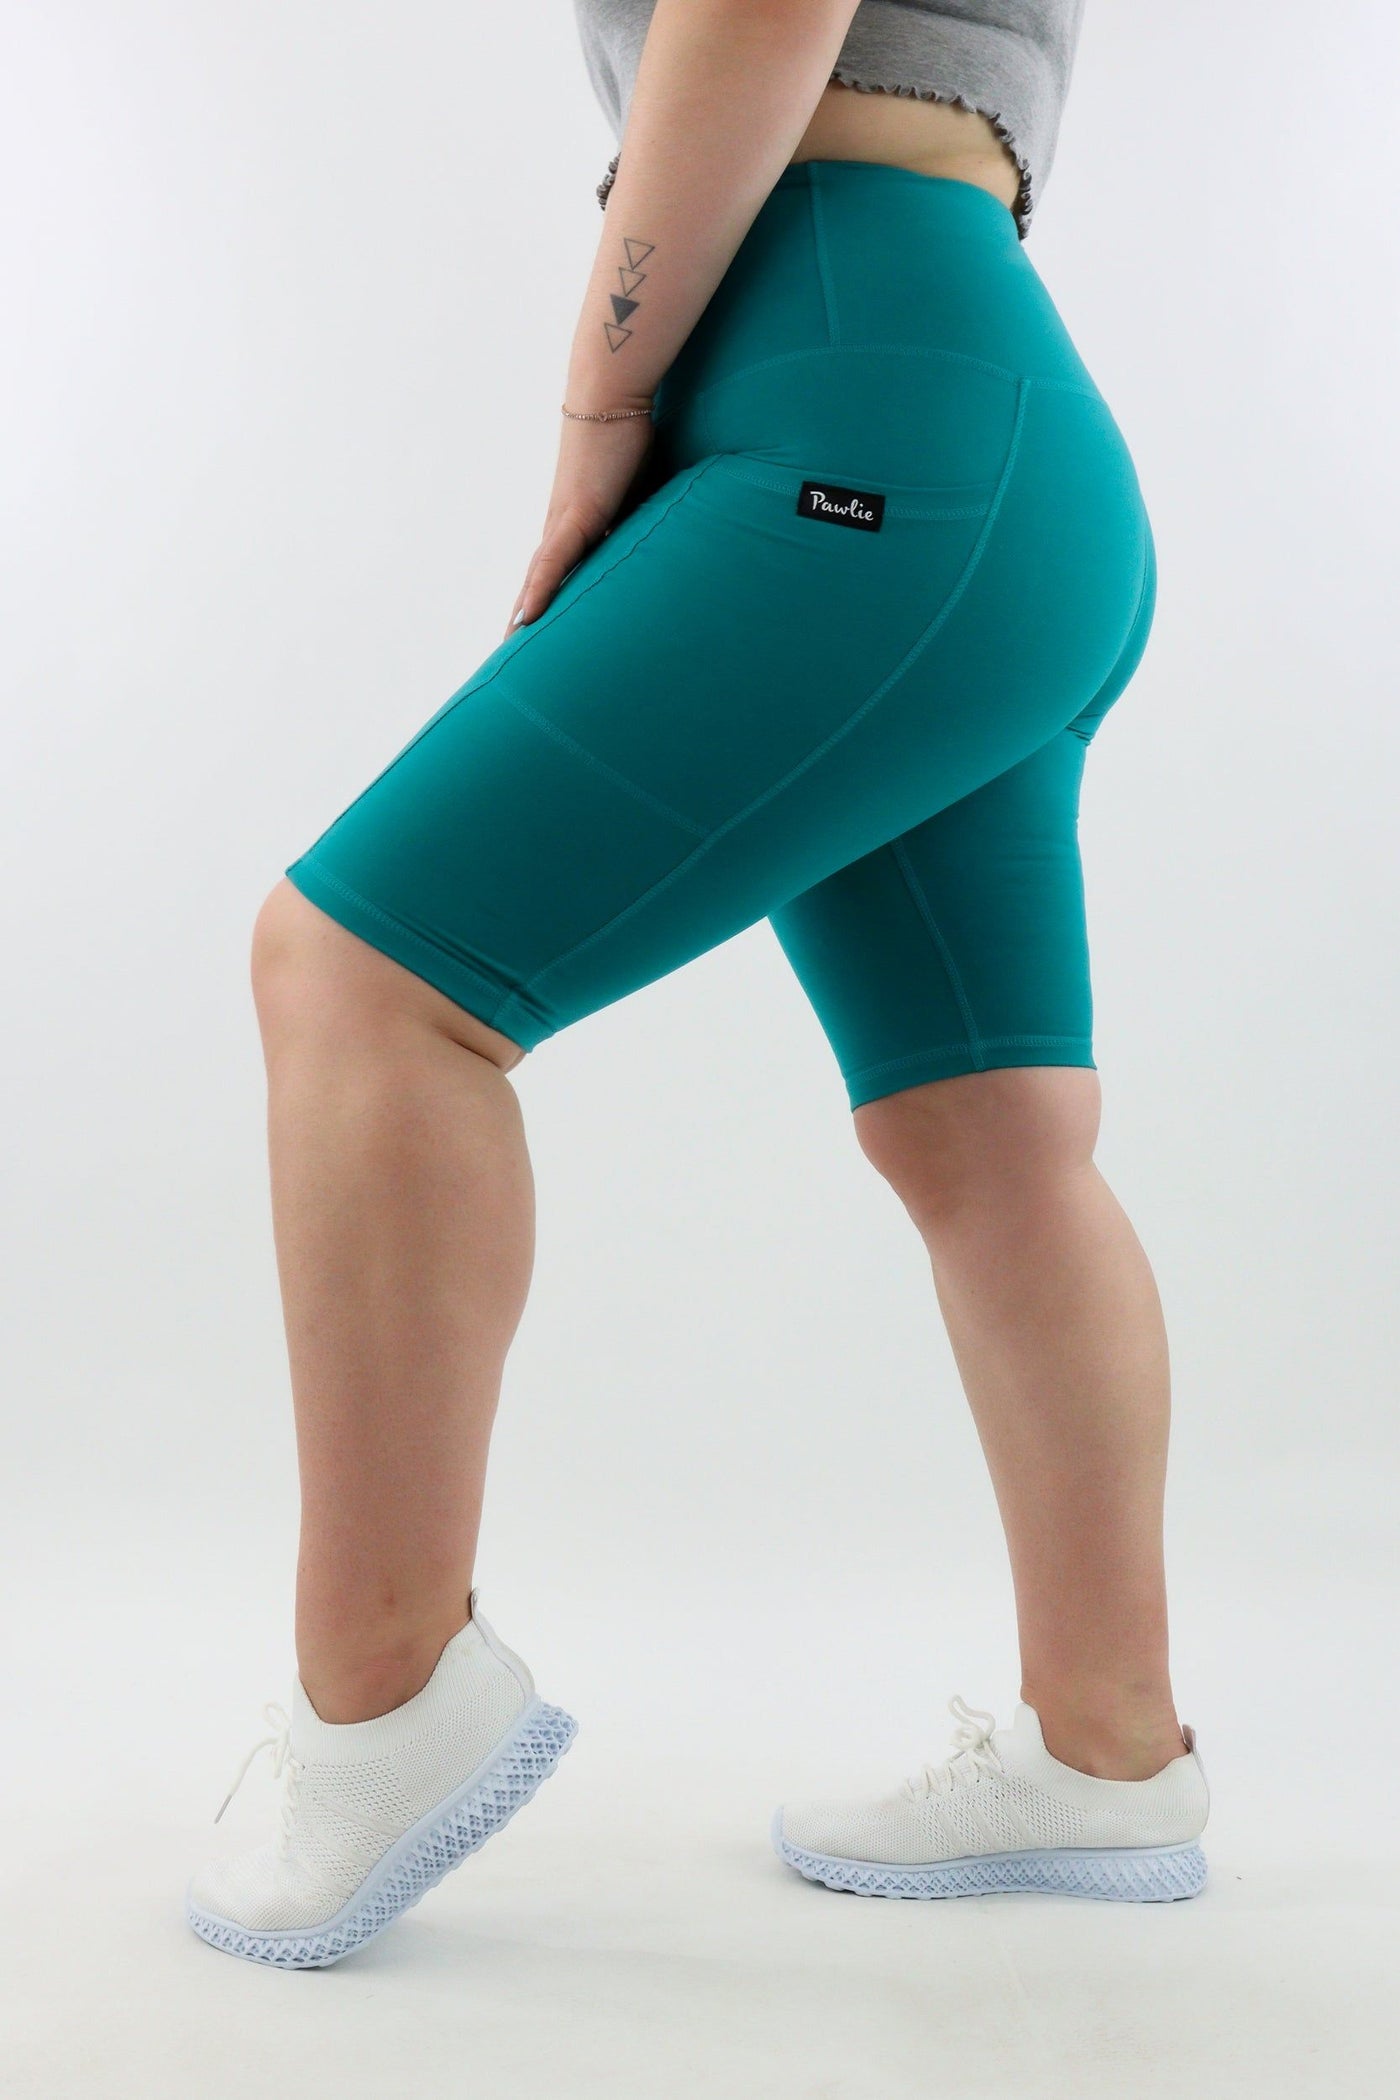 Turquoise - Leg Pockets - Long Shorts - Hybrid 2.0 - Pawlie